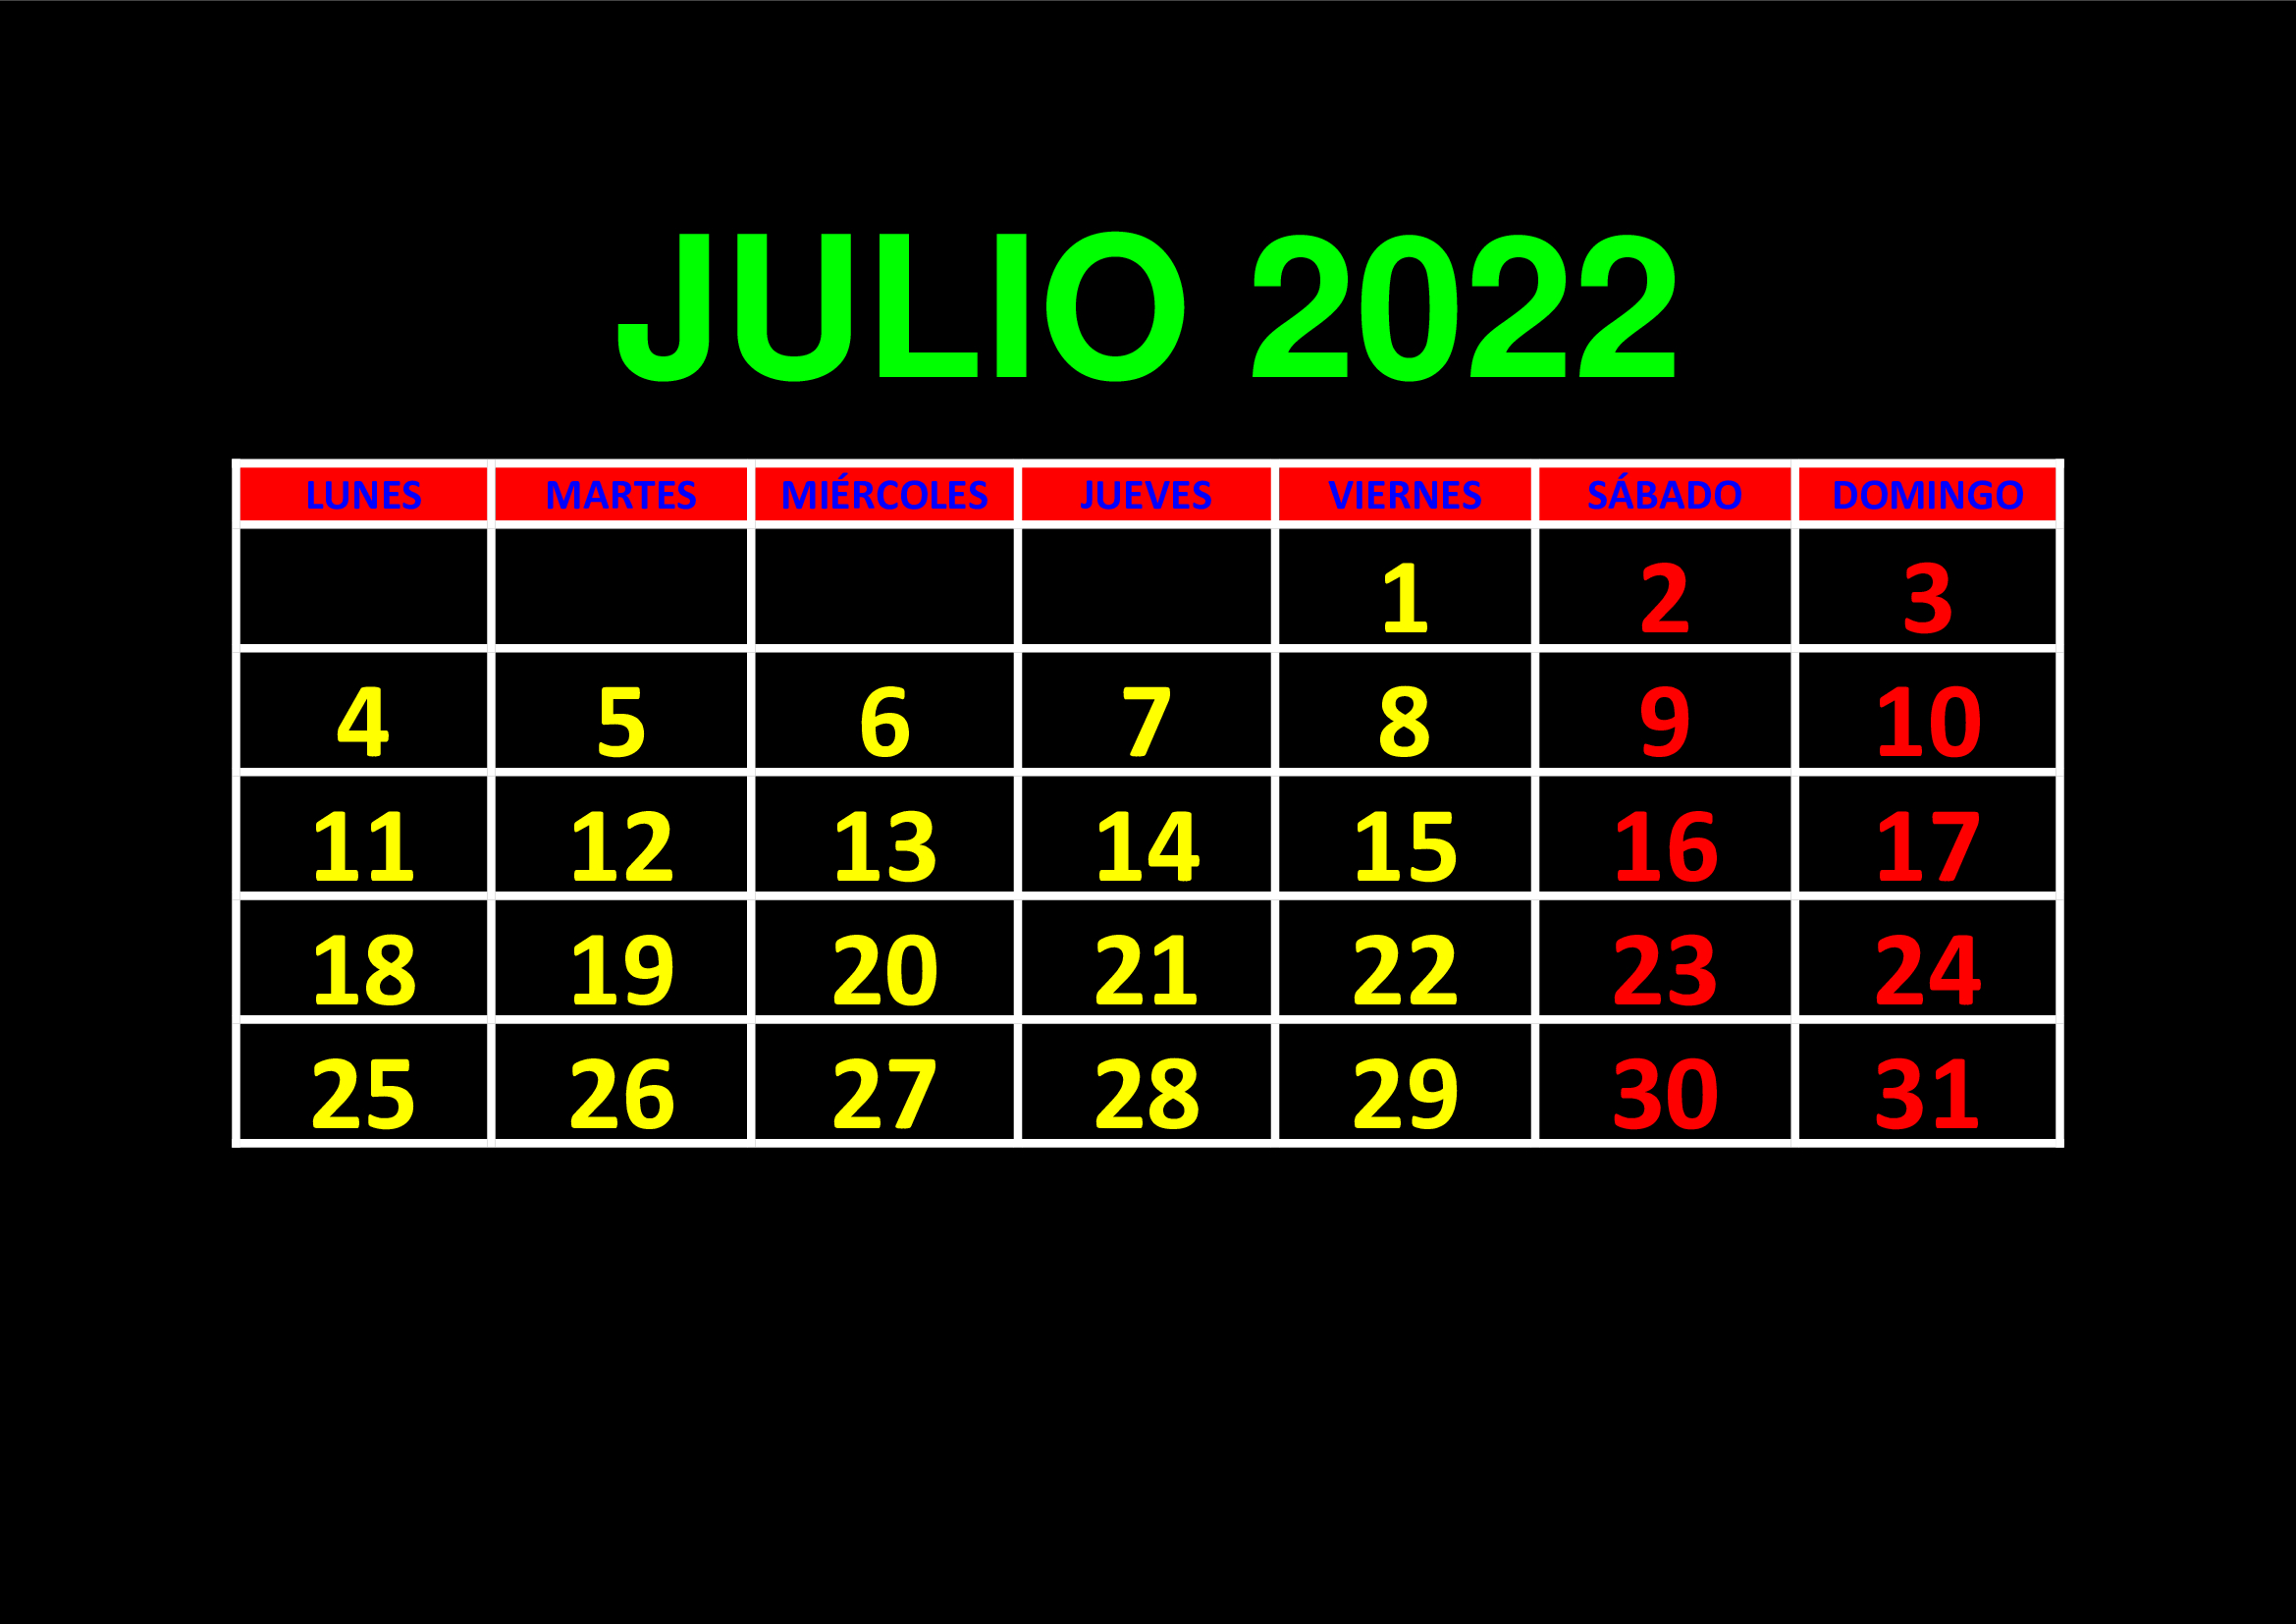 La imagen muestra el mes de julio de 2022